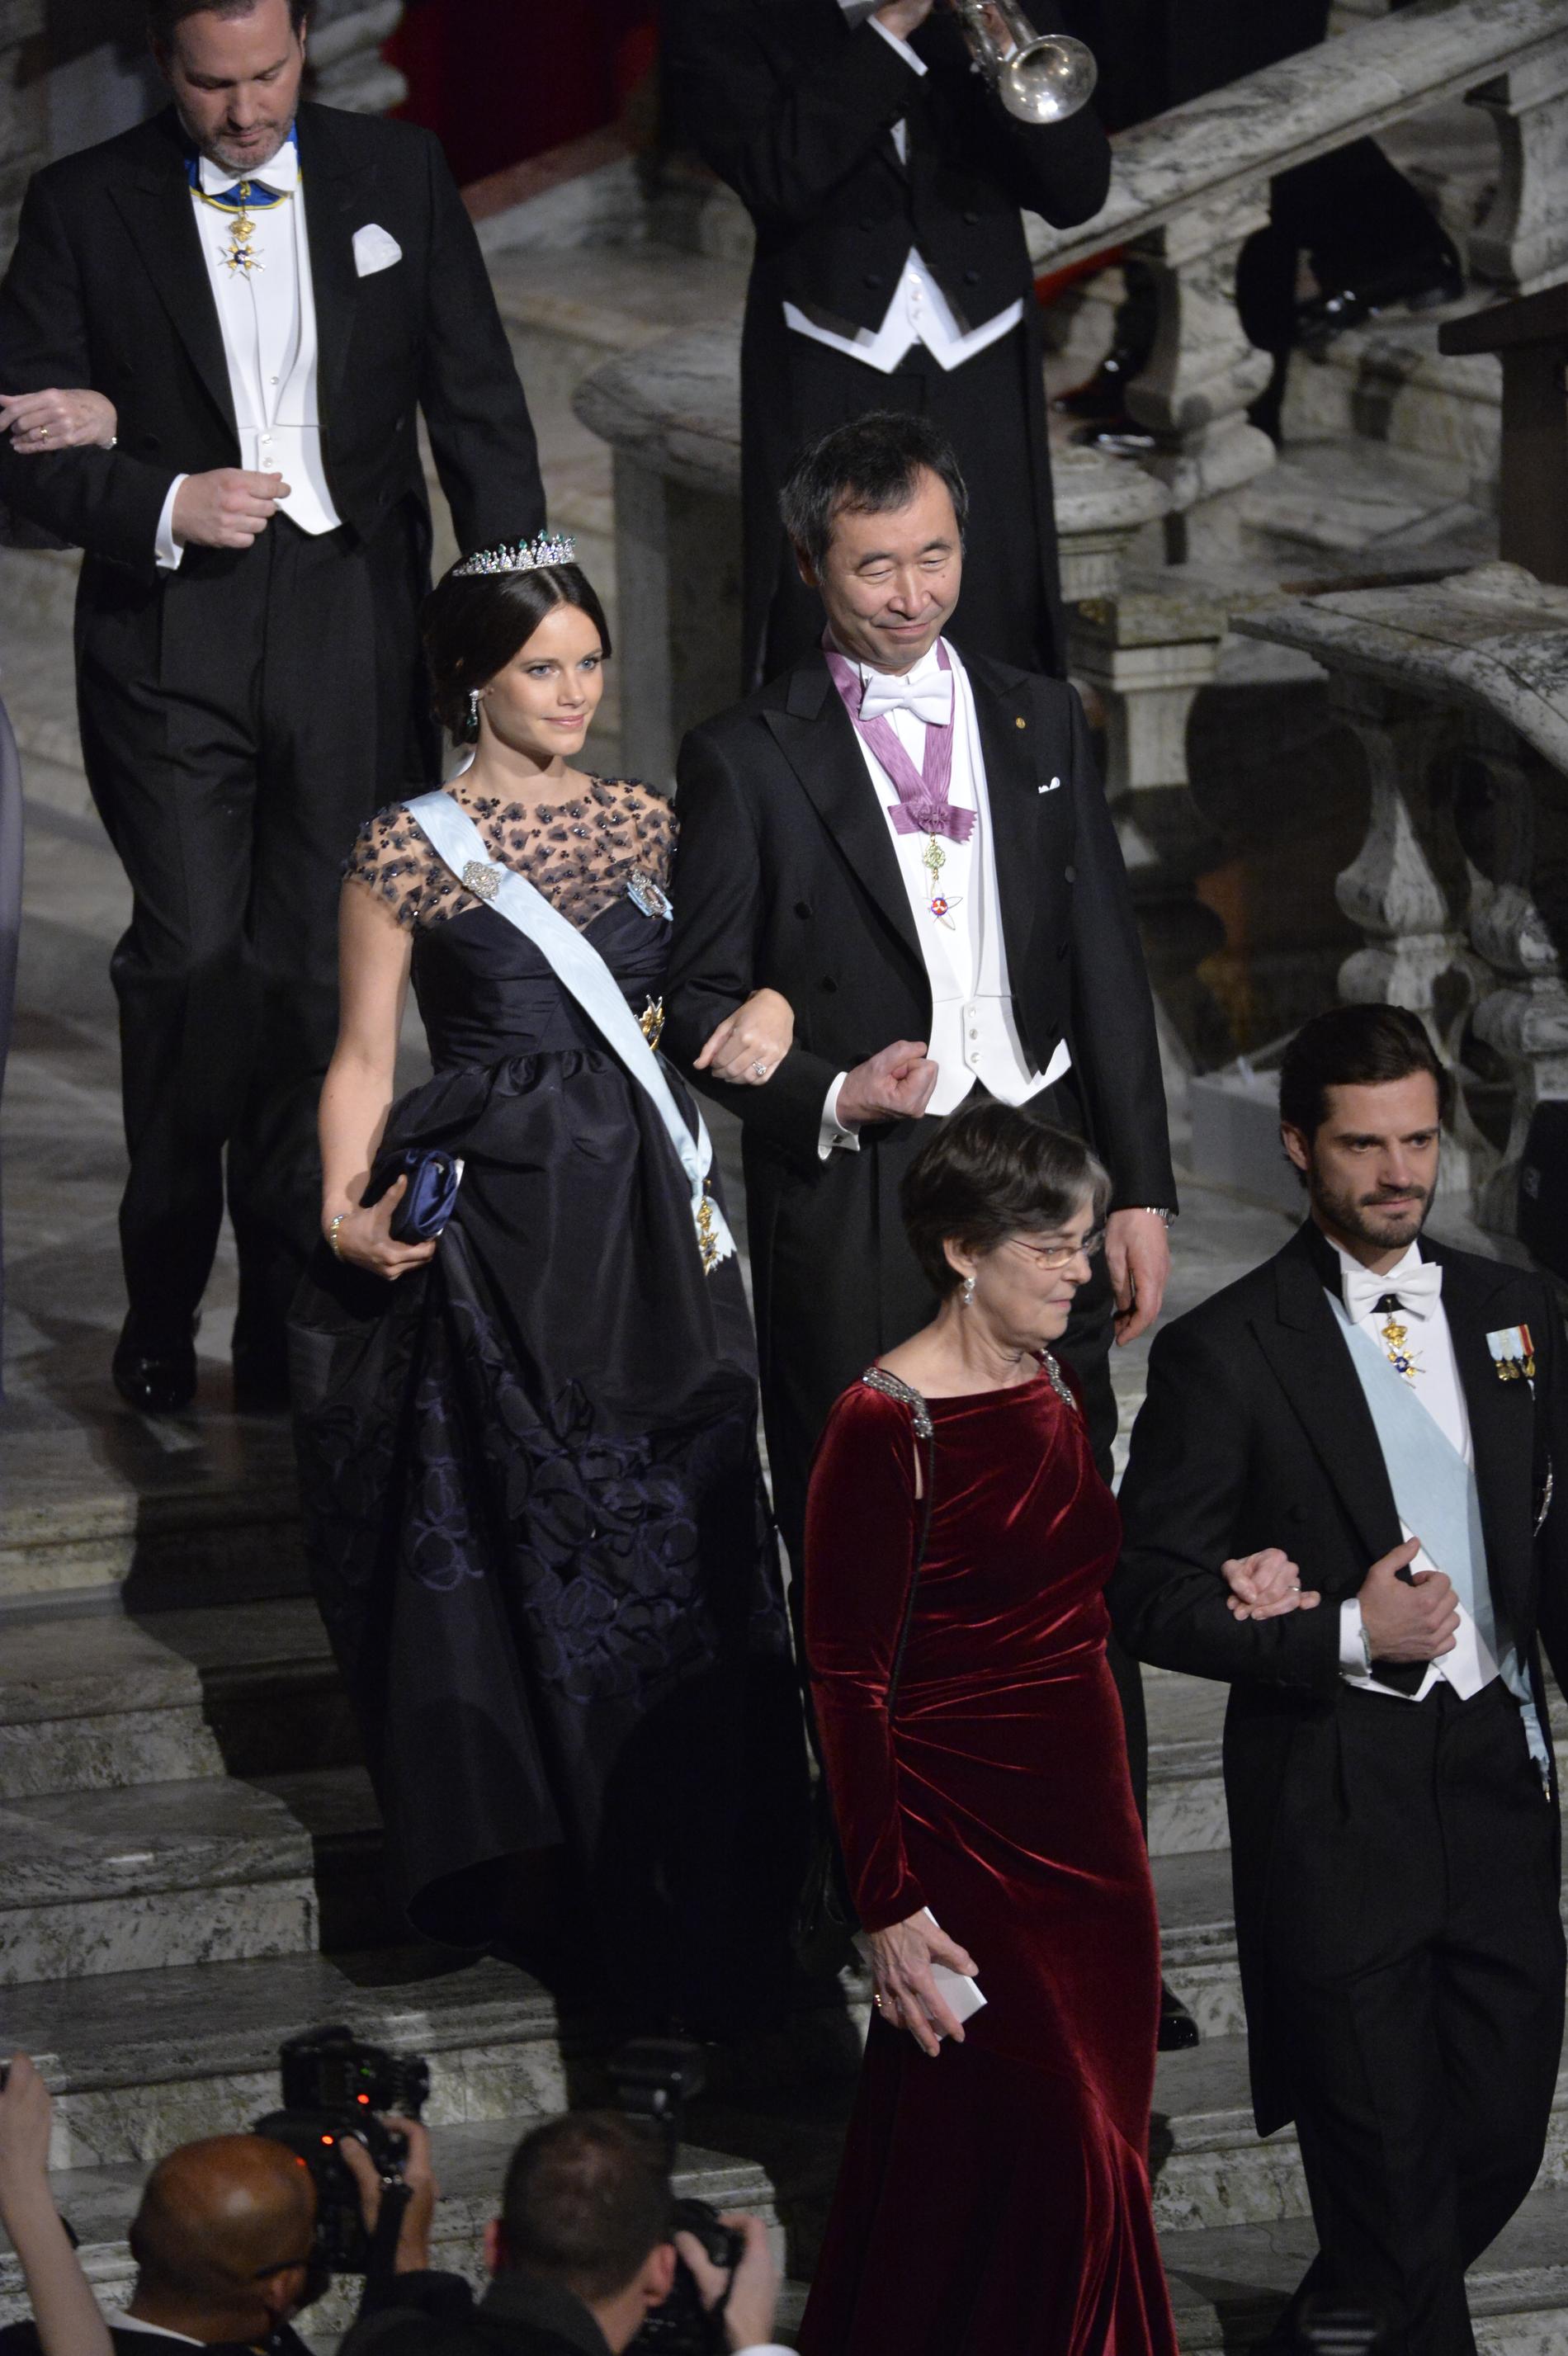 Prinsessan Sofia med professor Takaaki Kajita anländer till Blå hallen inför Nobelbanketten i Stadshuset i Stockholm på torsdagen.